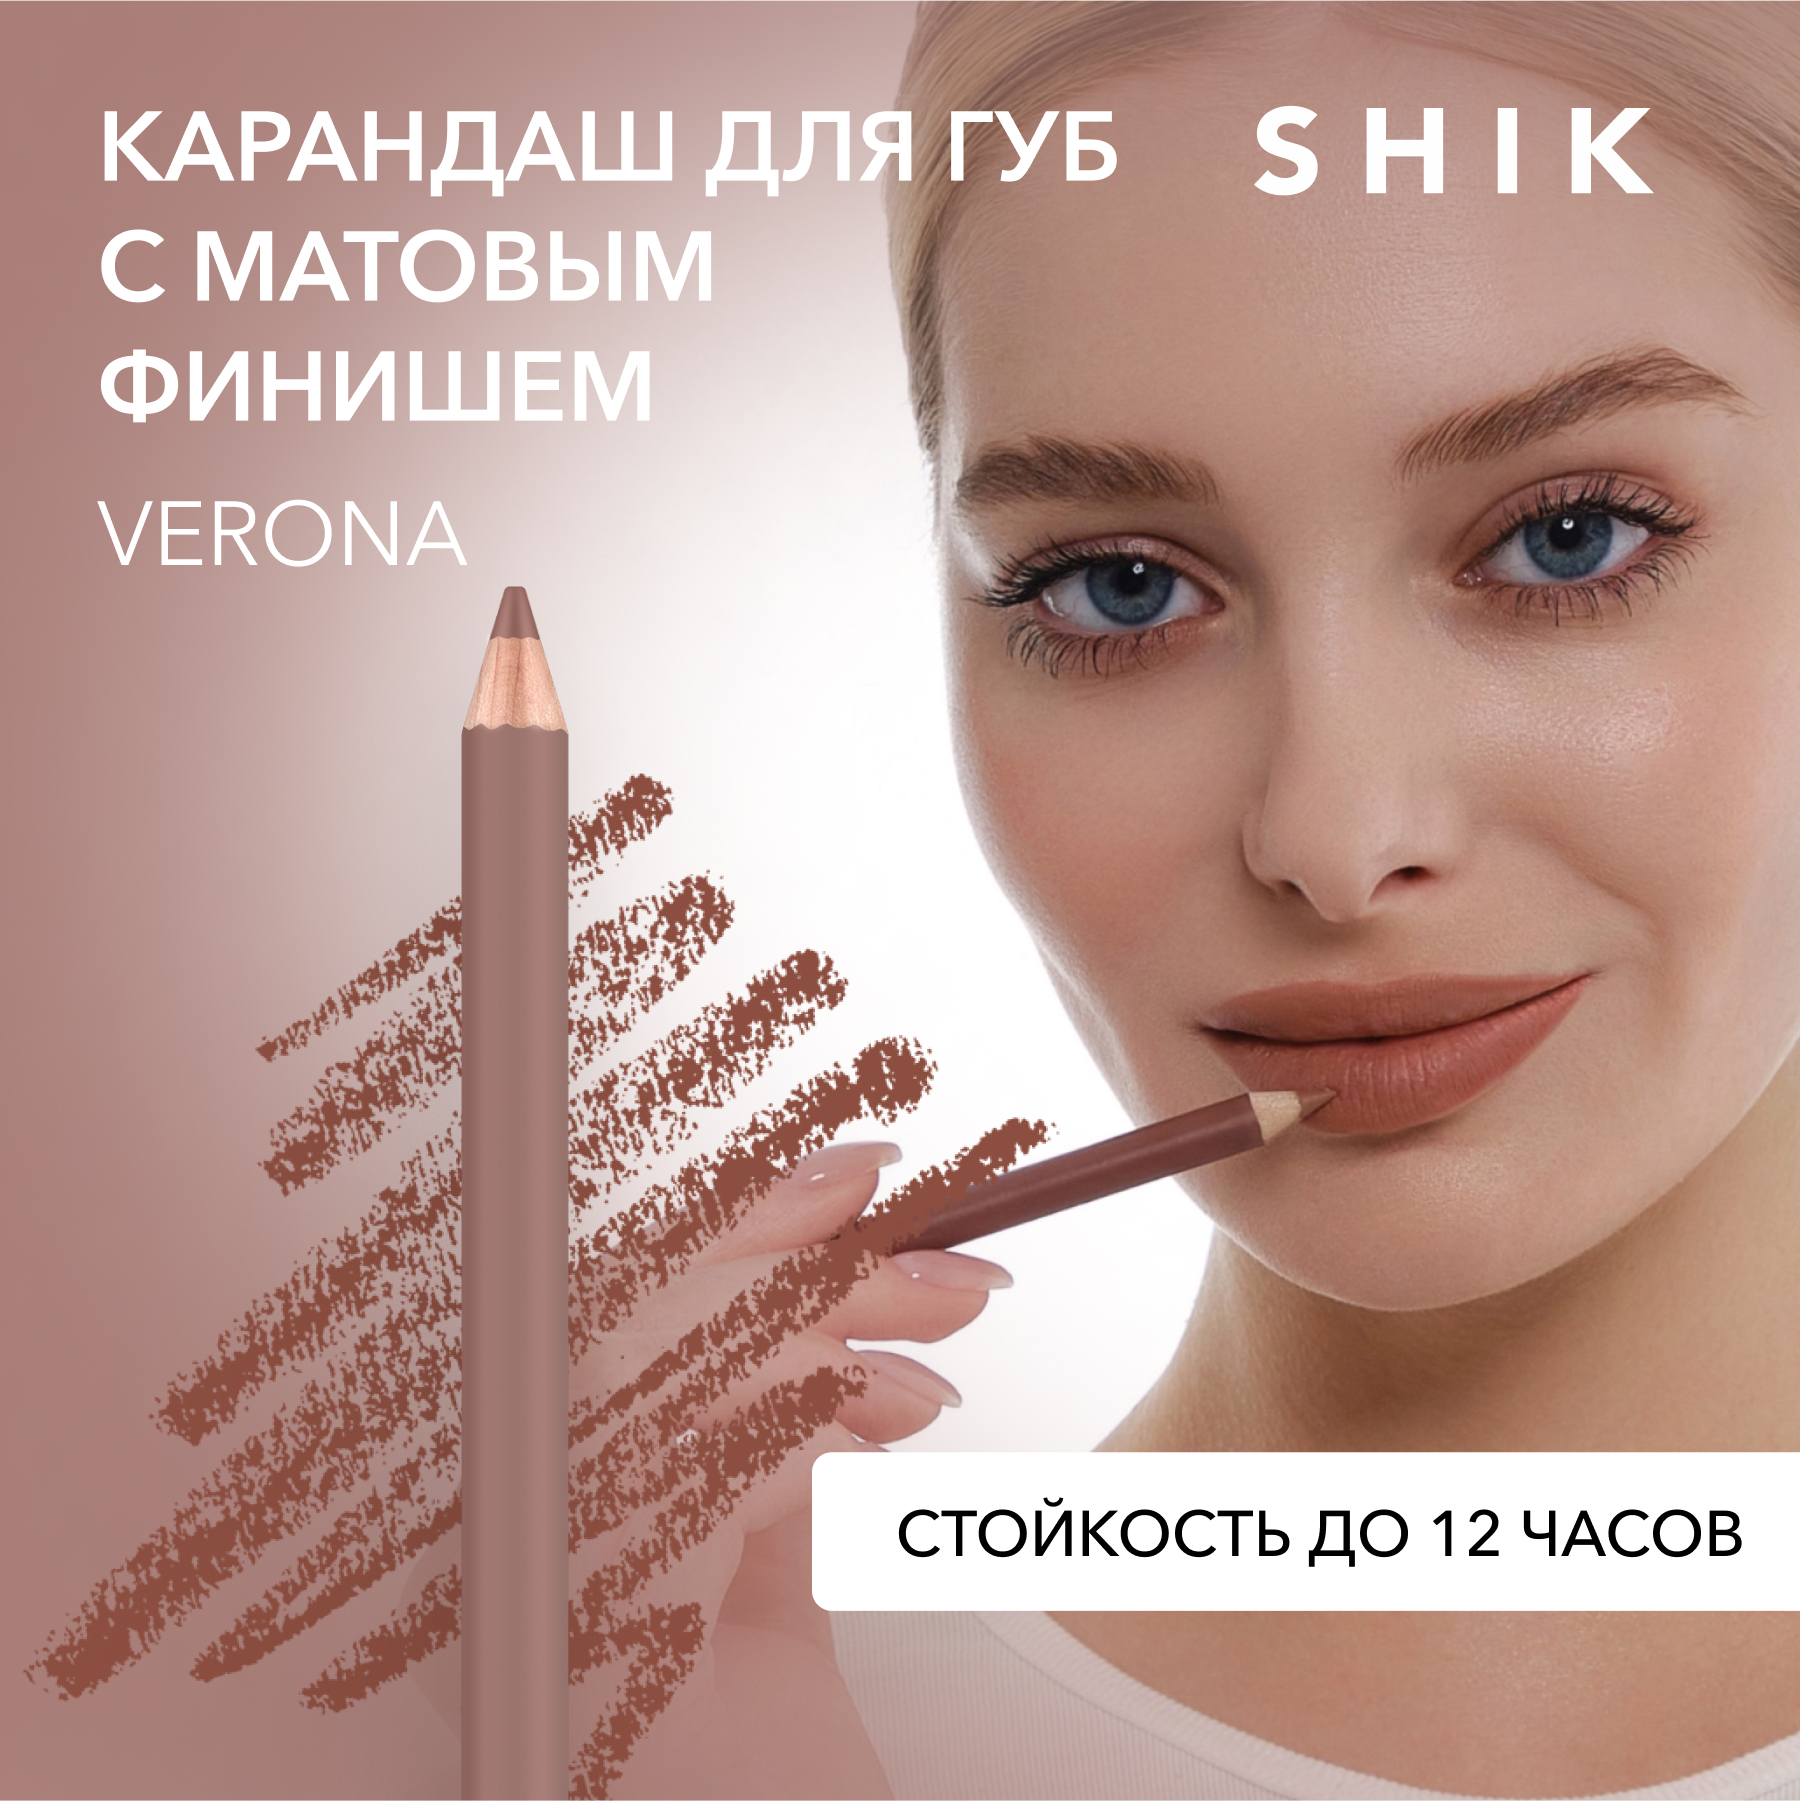 Карандаш для губ SHIK Lip Pencil тон Verona 1,14 г shik карандаш для губ lip pencil venice 12 гр